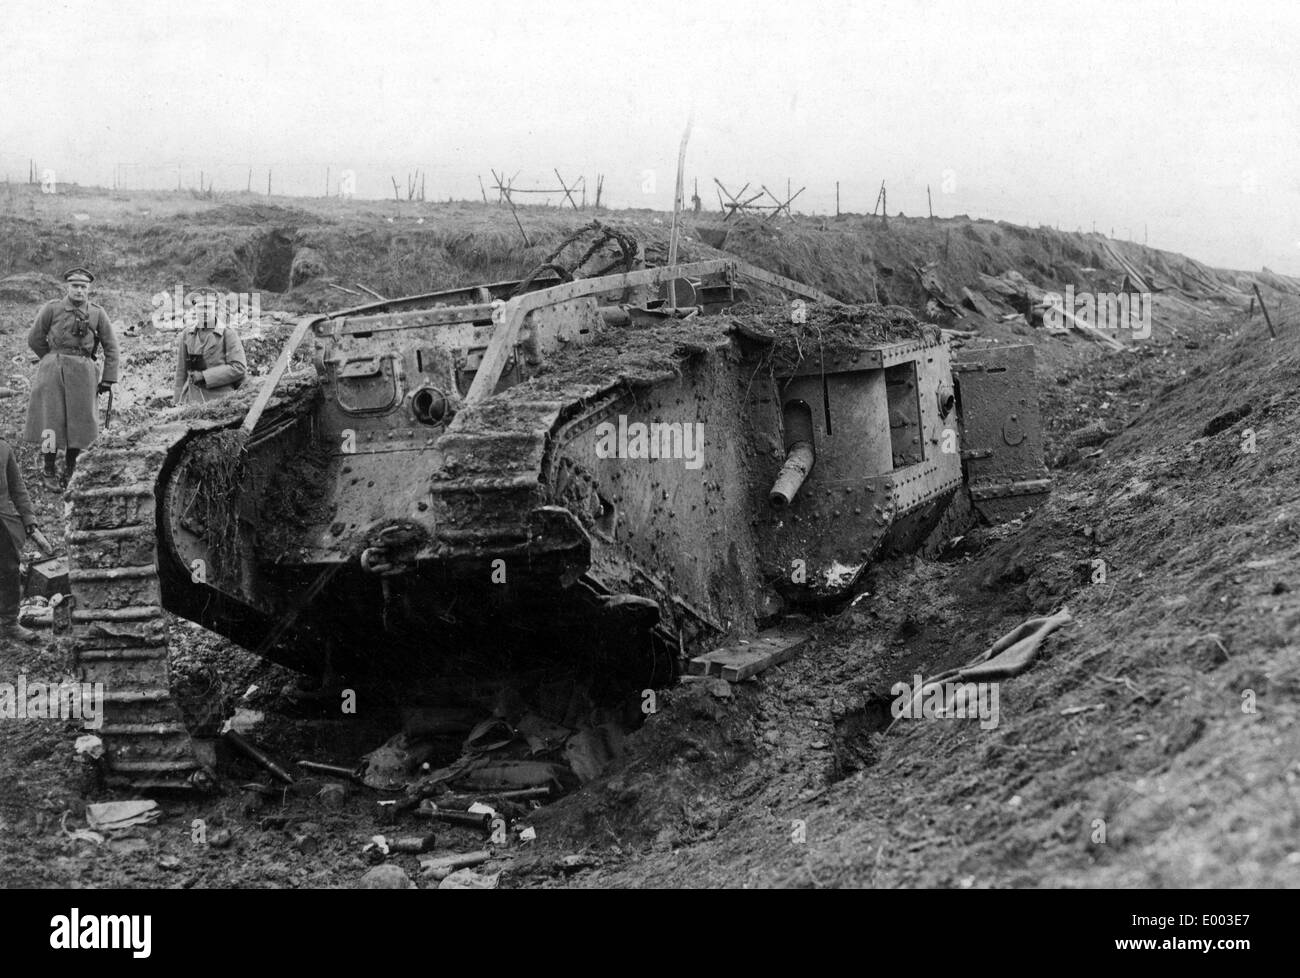 tank-battle-at-cambrai-1917-E003E7.jpg